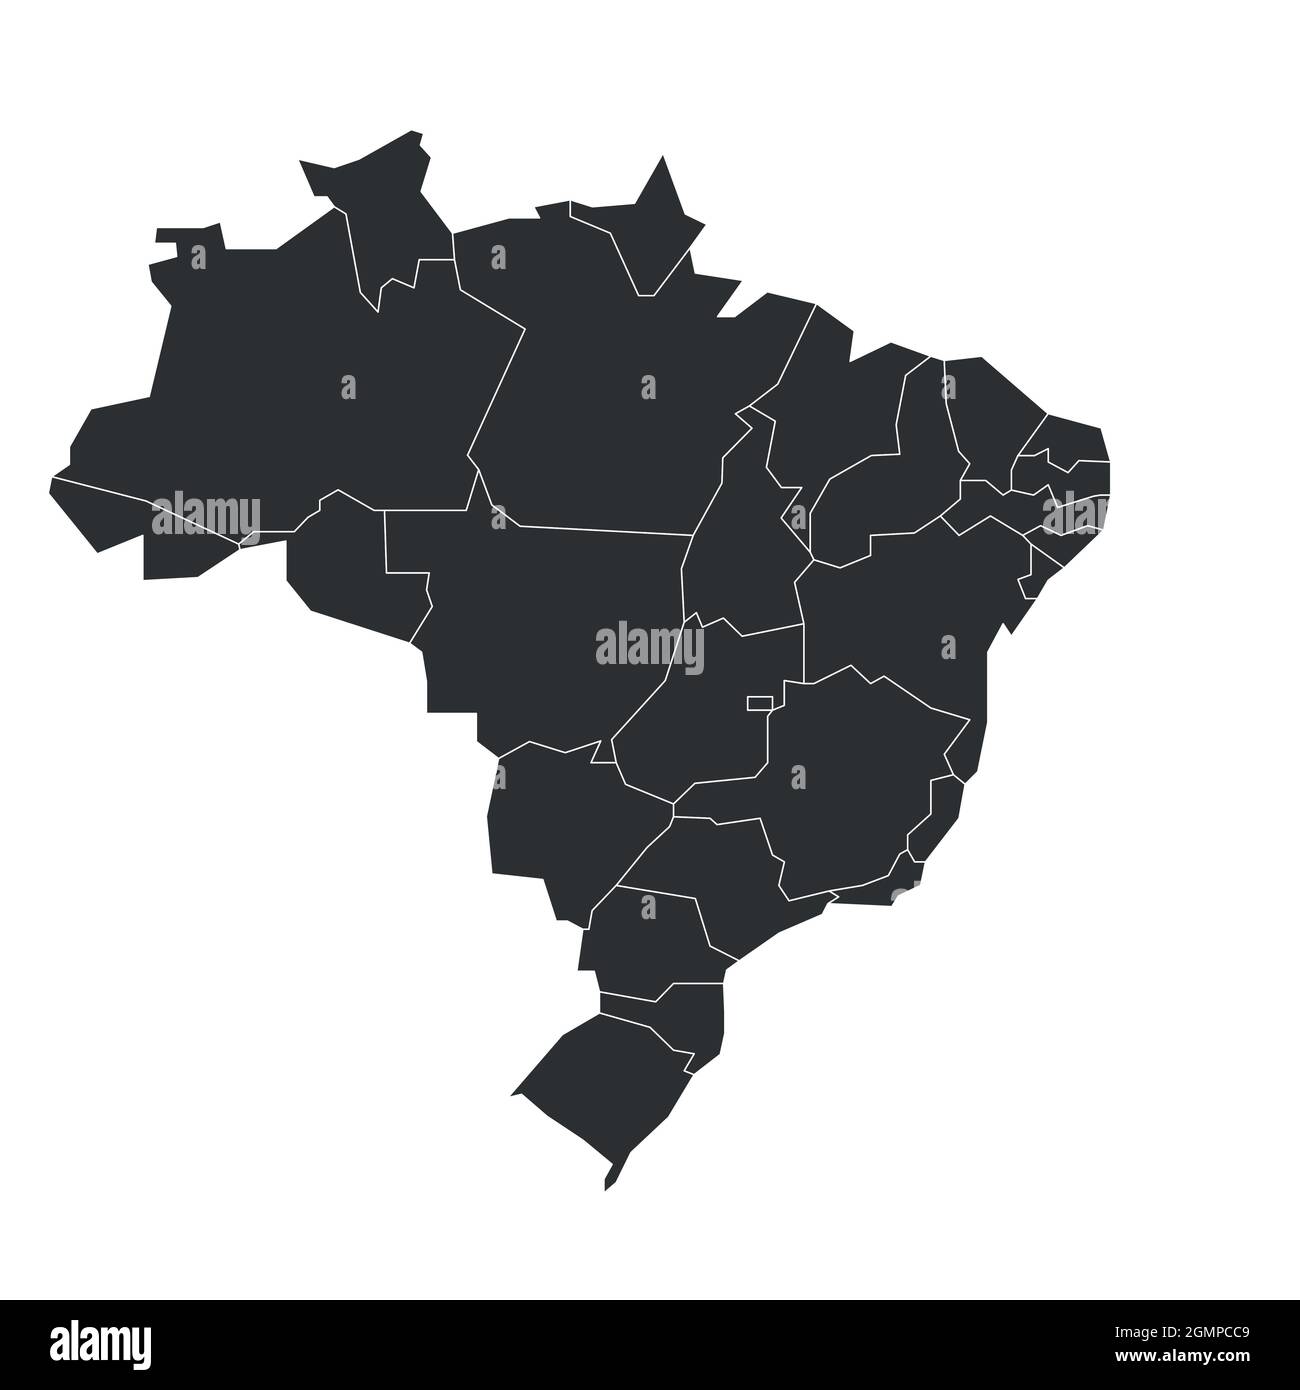 Graue politische Landkarte von Brasilien. Verwaltungsabteilungen - Staaten. Einfache, flache, leere Vektorkarte Stock Vektor